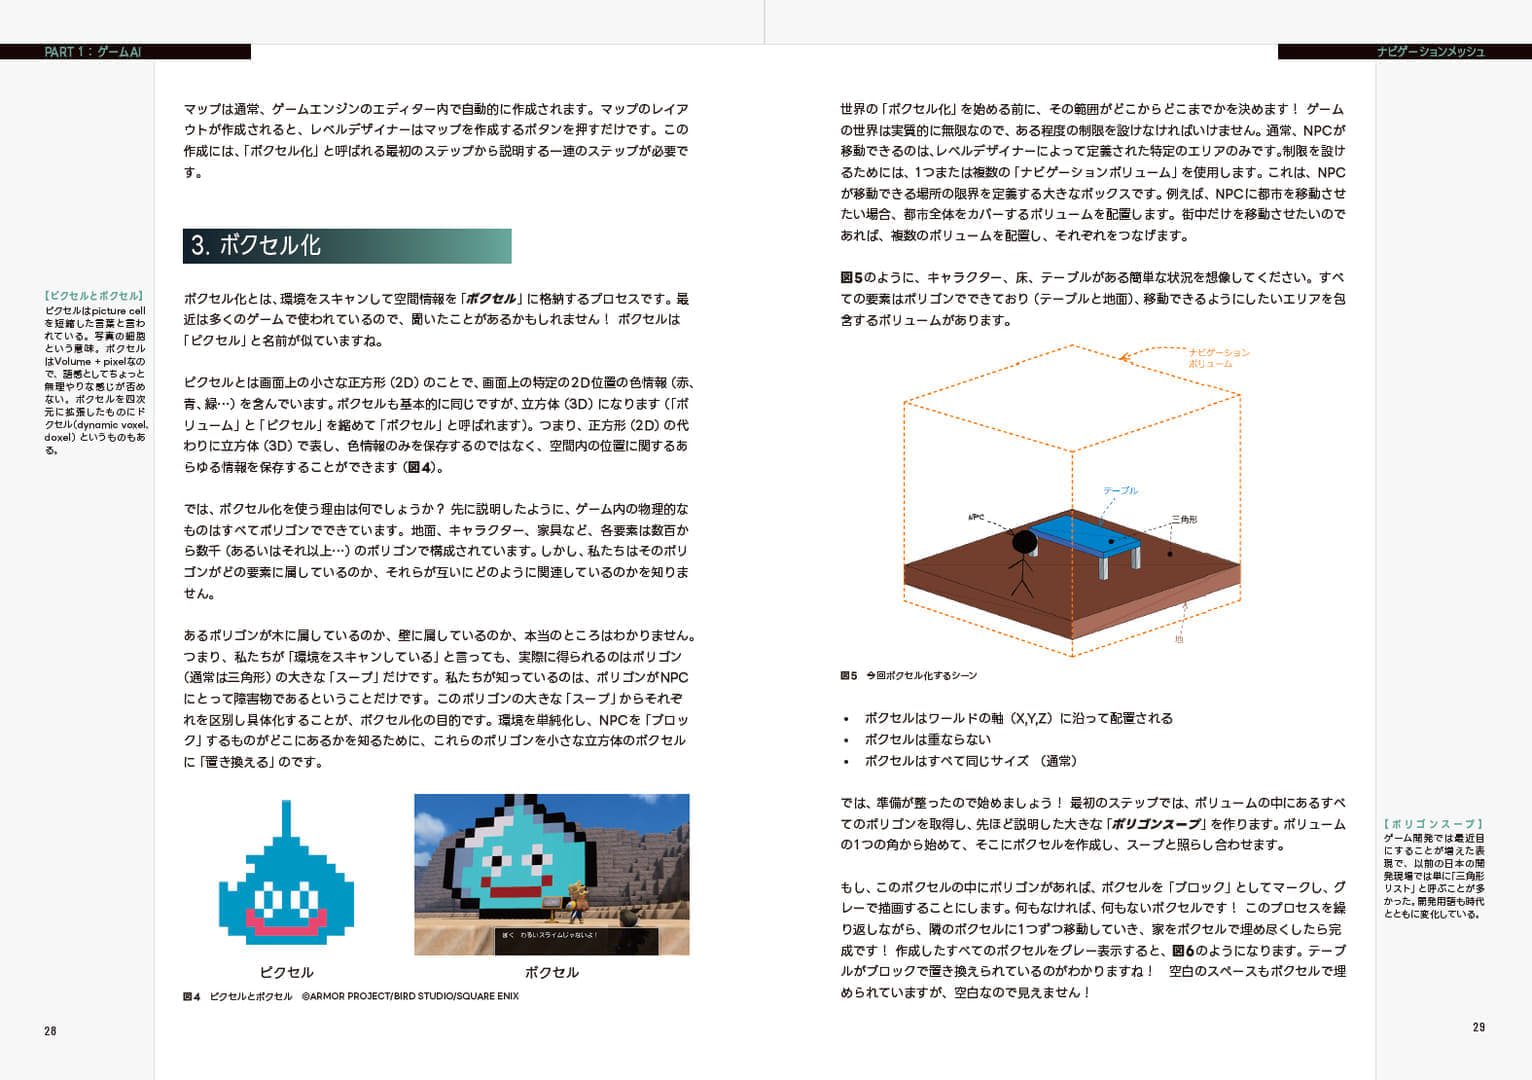 書籍『スクウェア・エニックスのAI』が発売開始。「日本でもっともわかりやすい、デジタルゲームAIの入門書」を目指した書籍_002